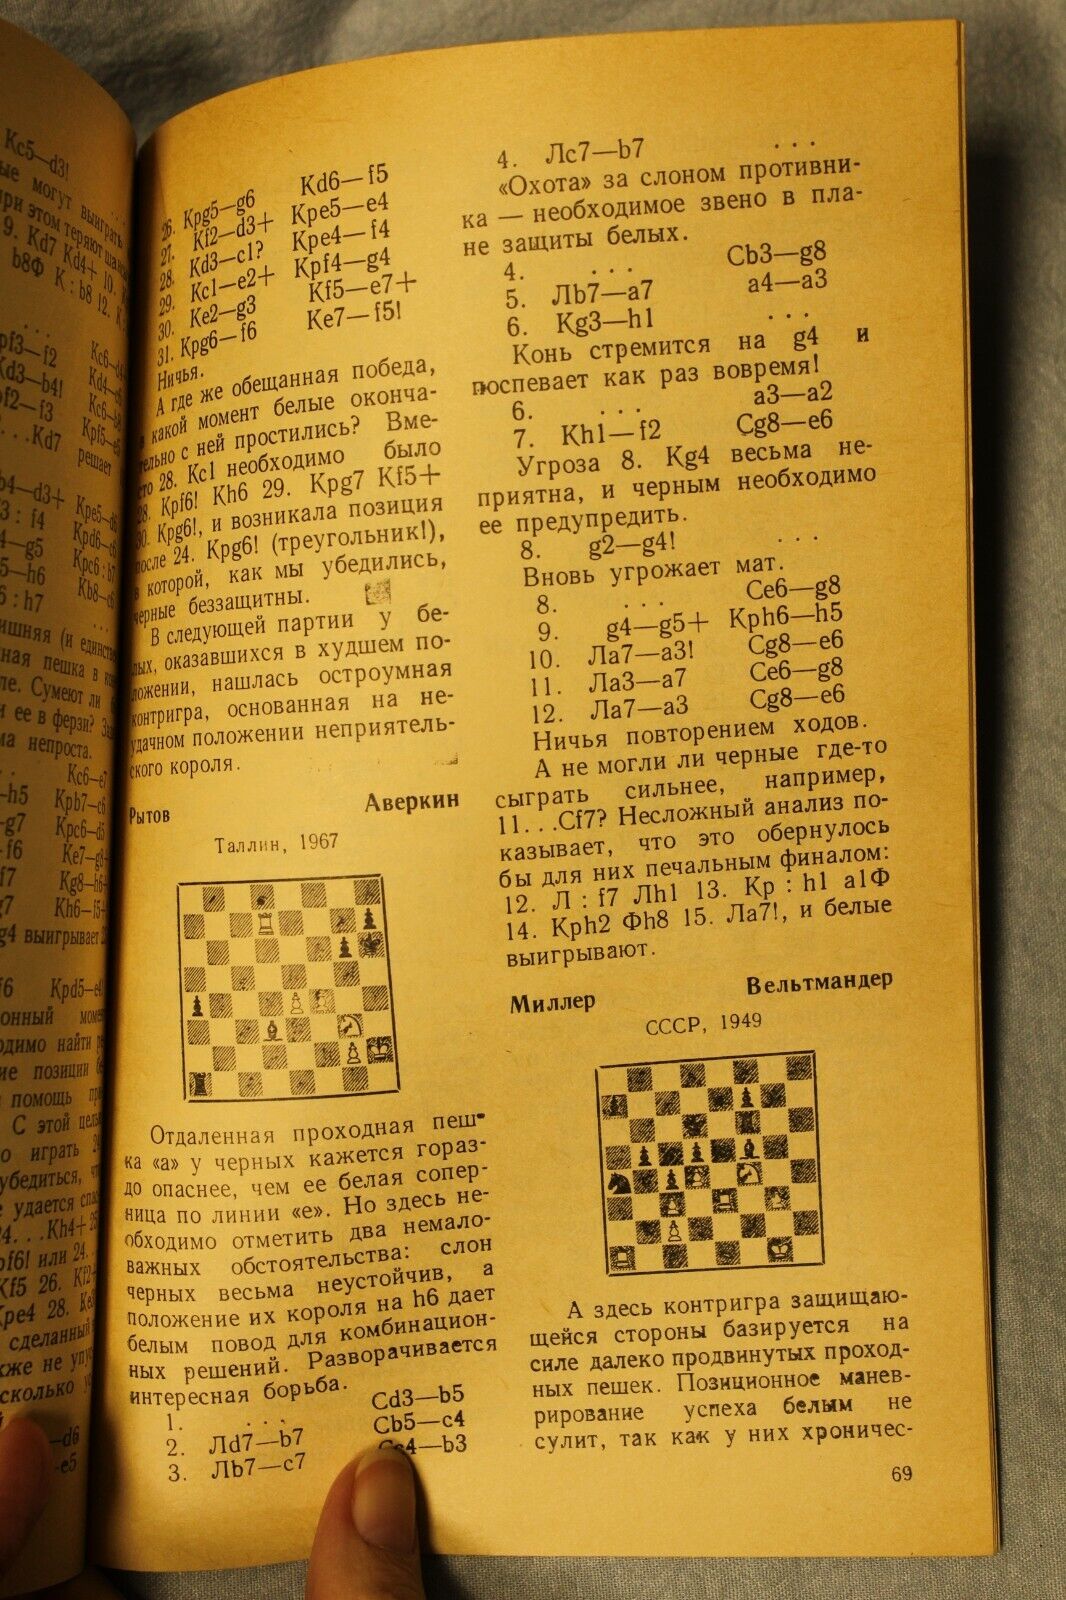 11118.Chess book: Signed E. Gufeld for V. Murahvery, Minimal Advantage, 1984